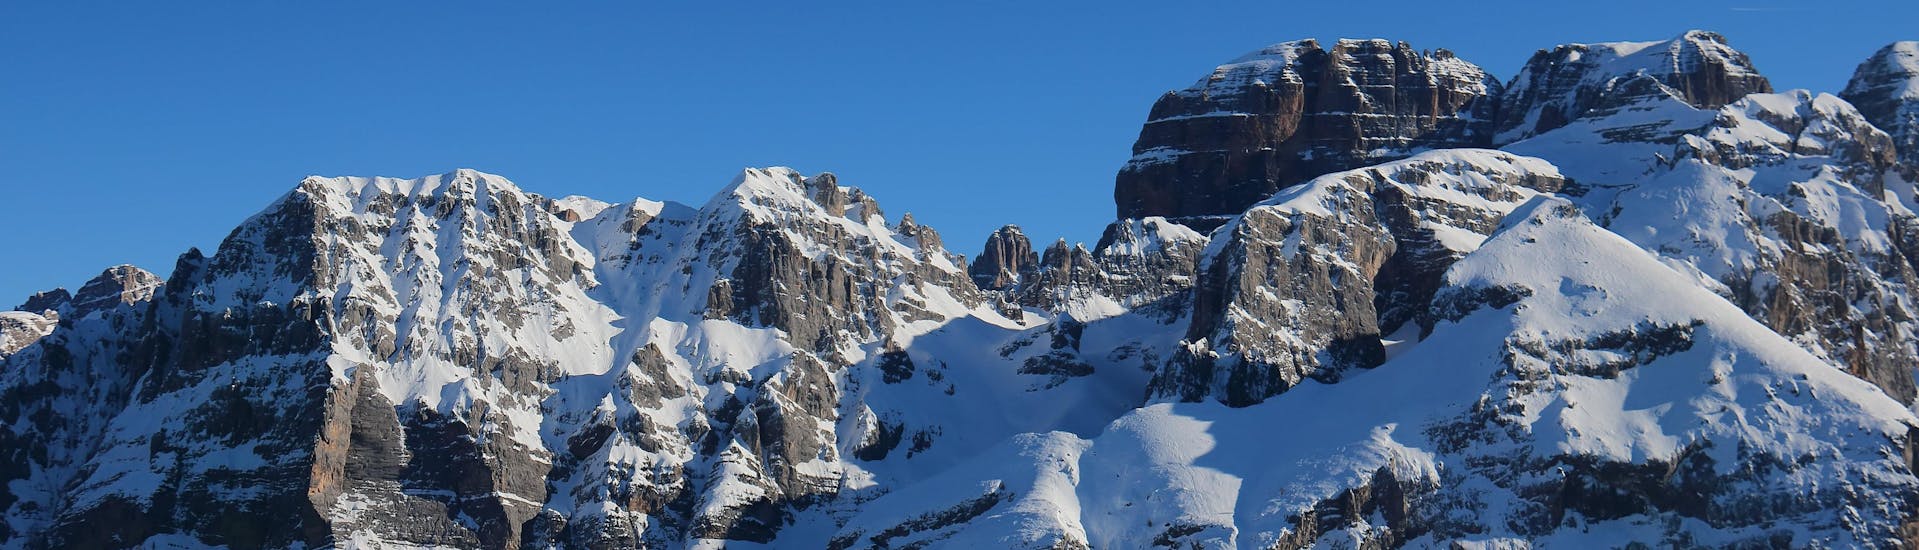 Vista del paesaggio alpino della stazione sciistica di Pinzolo, dove le scuole di sci locali offrono le loro lezioni di sci.